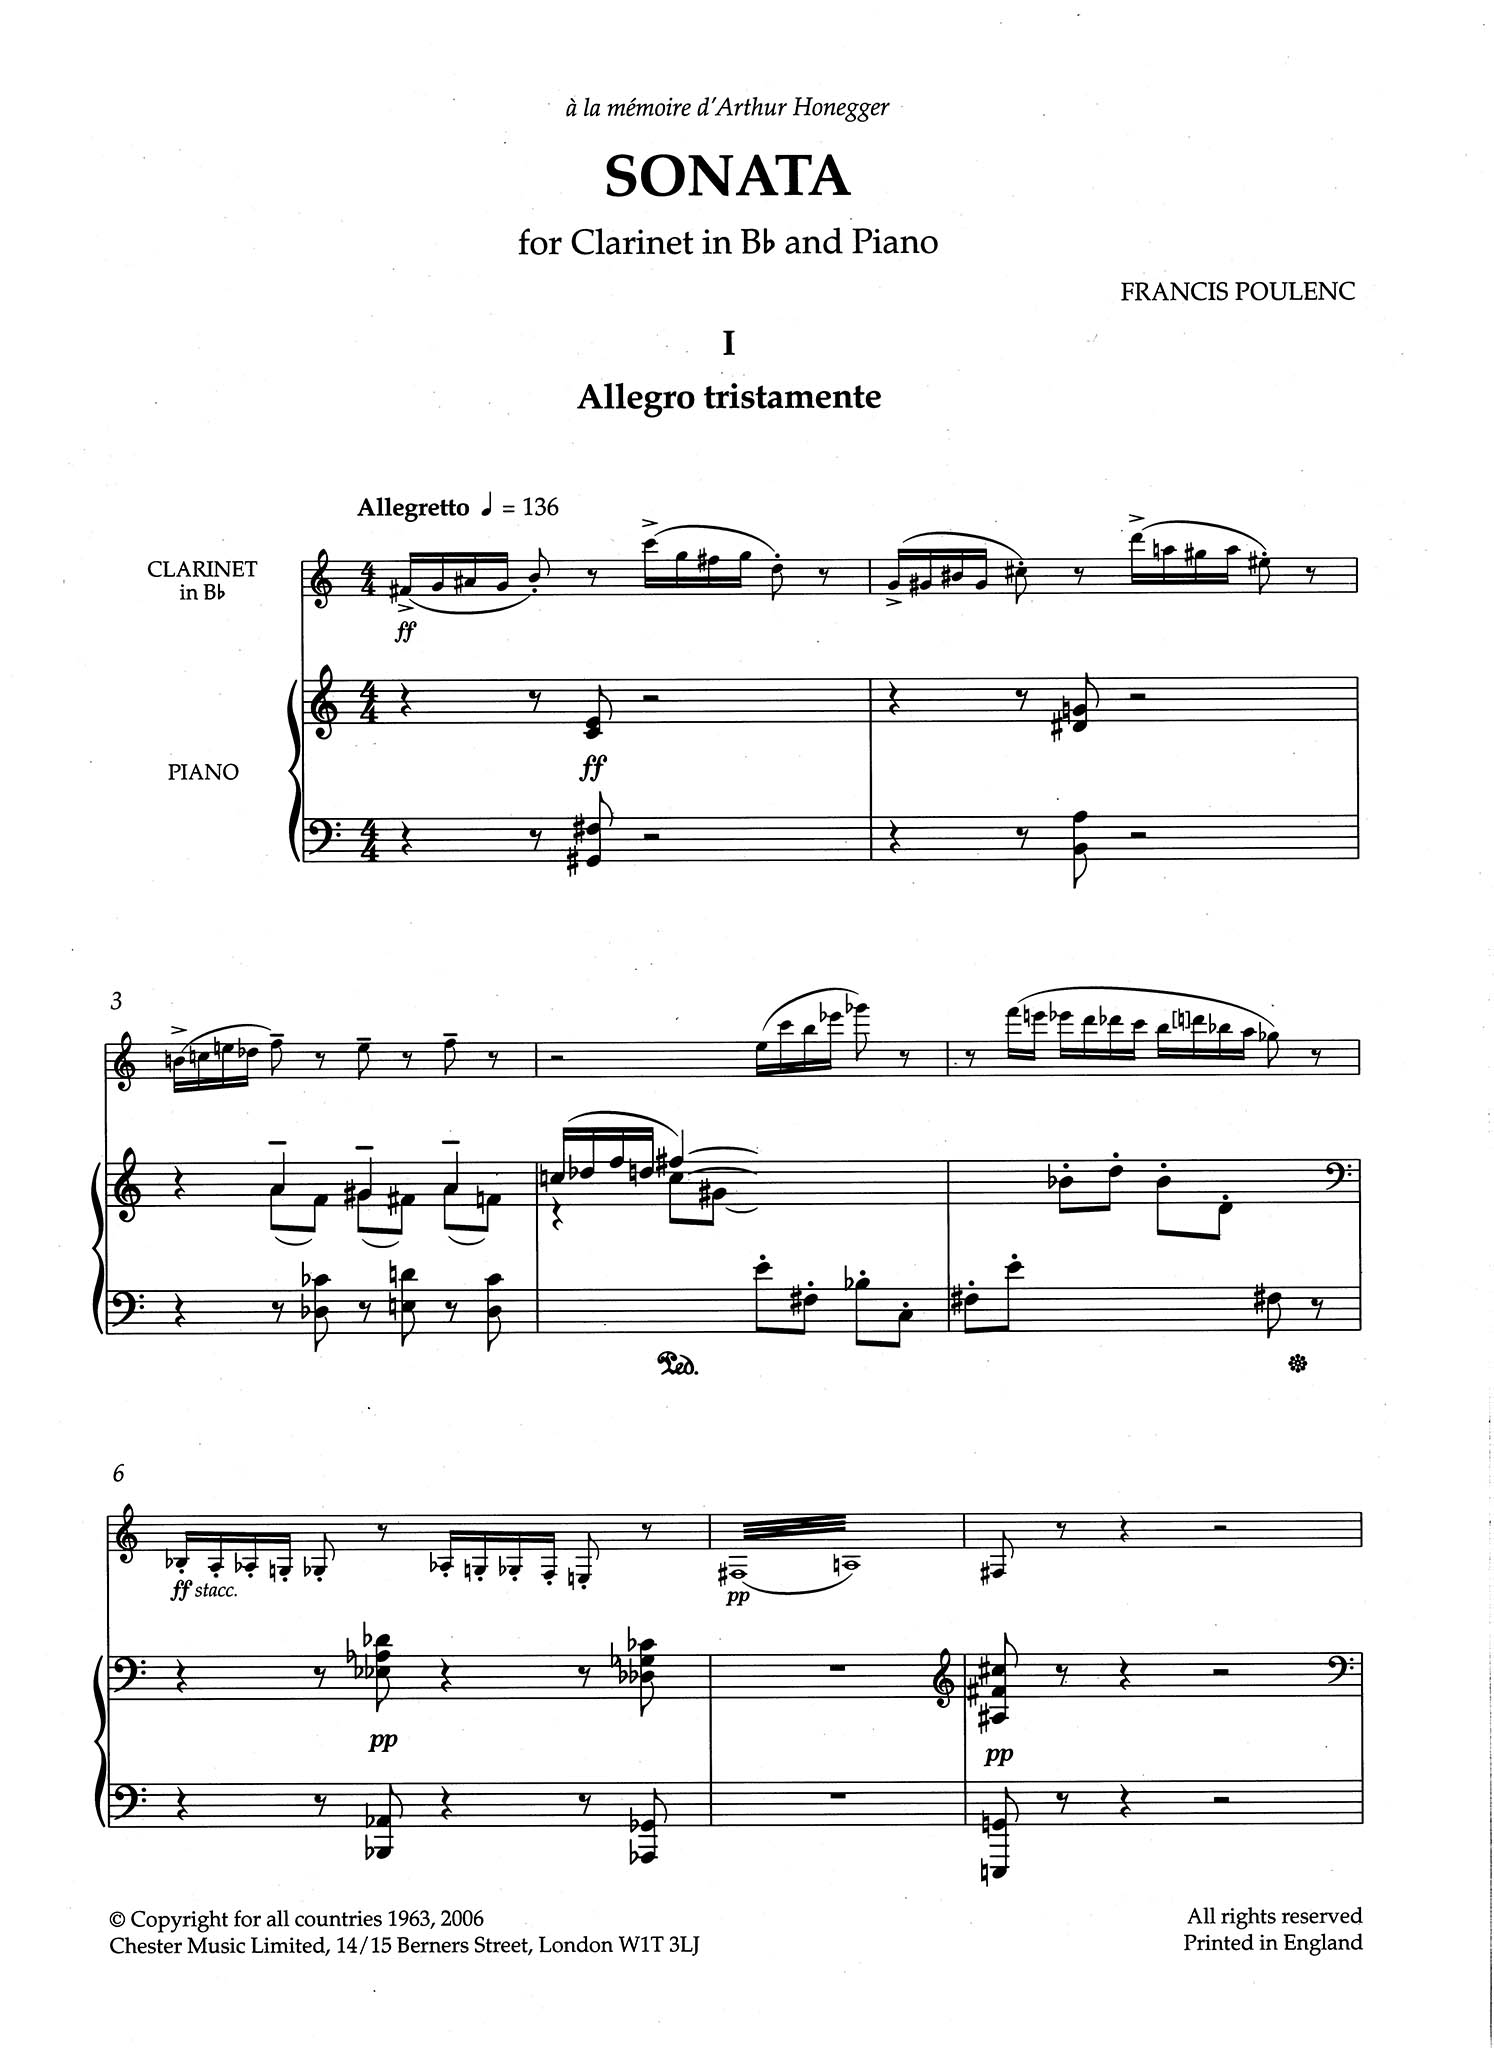 Sonata for Clarinet & Piano - Movement 1